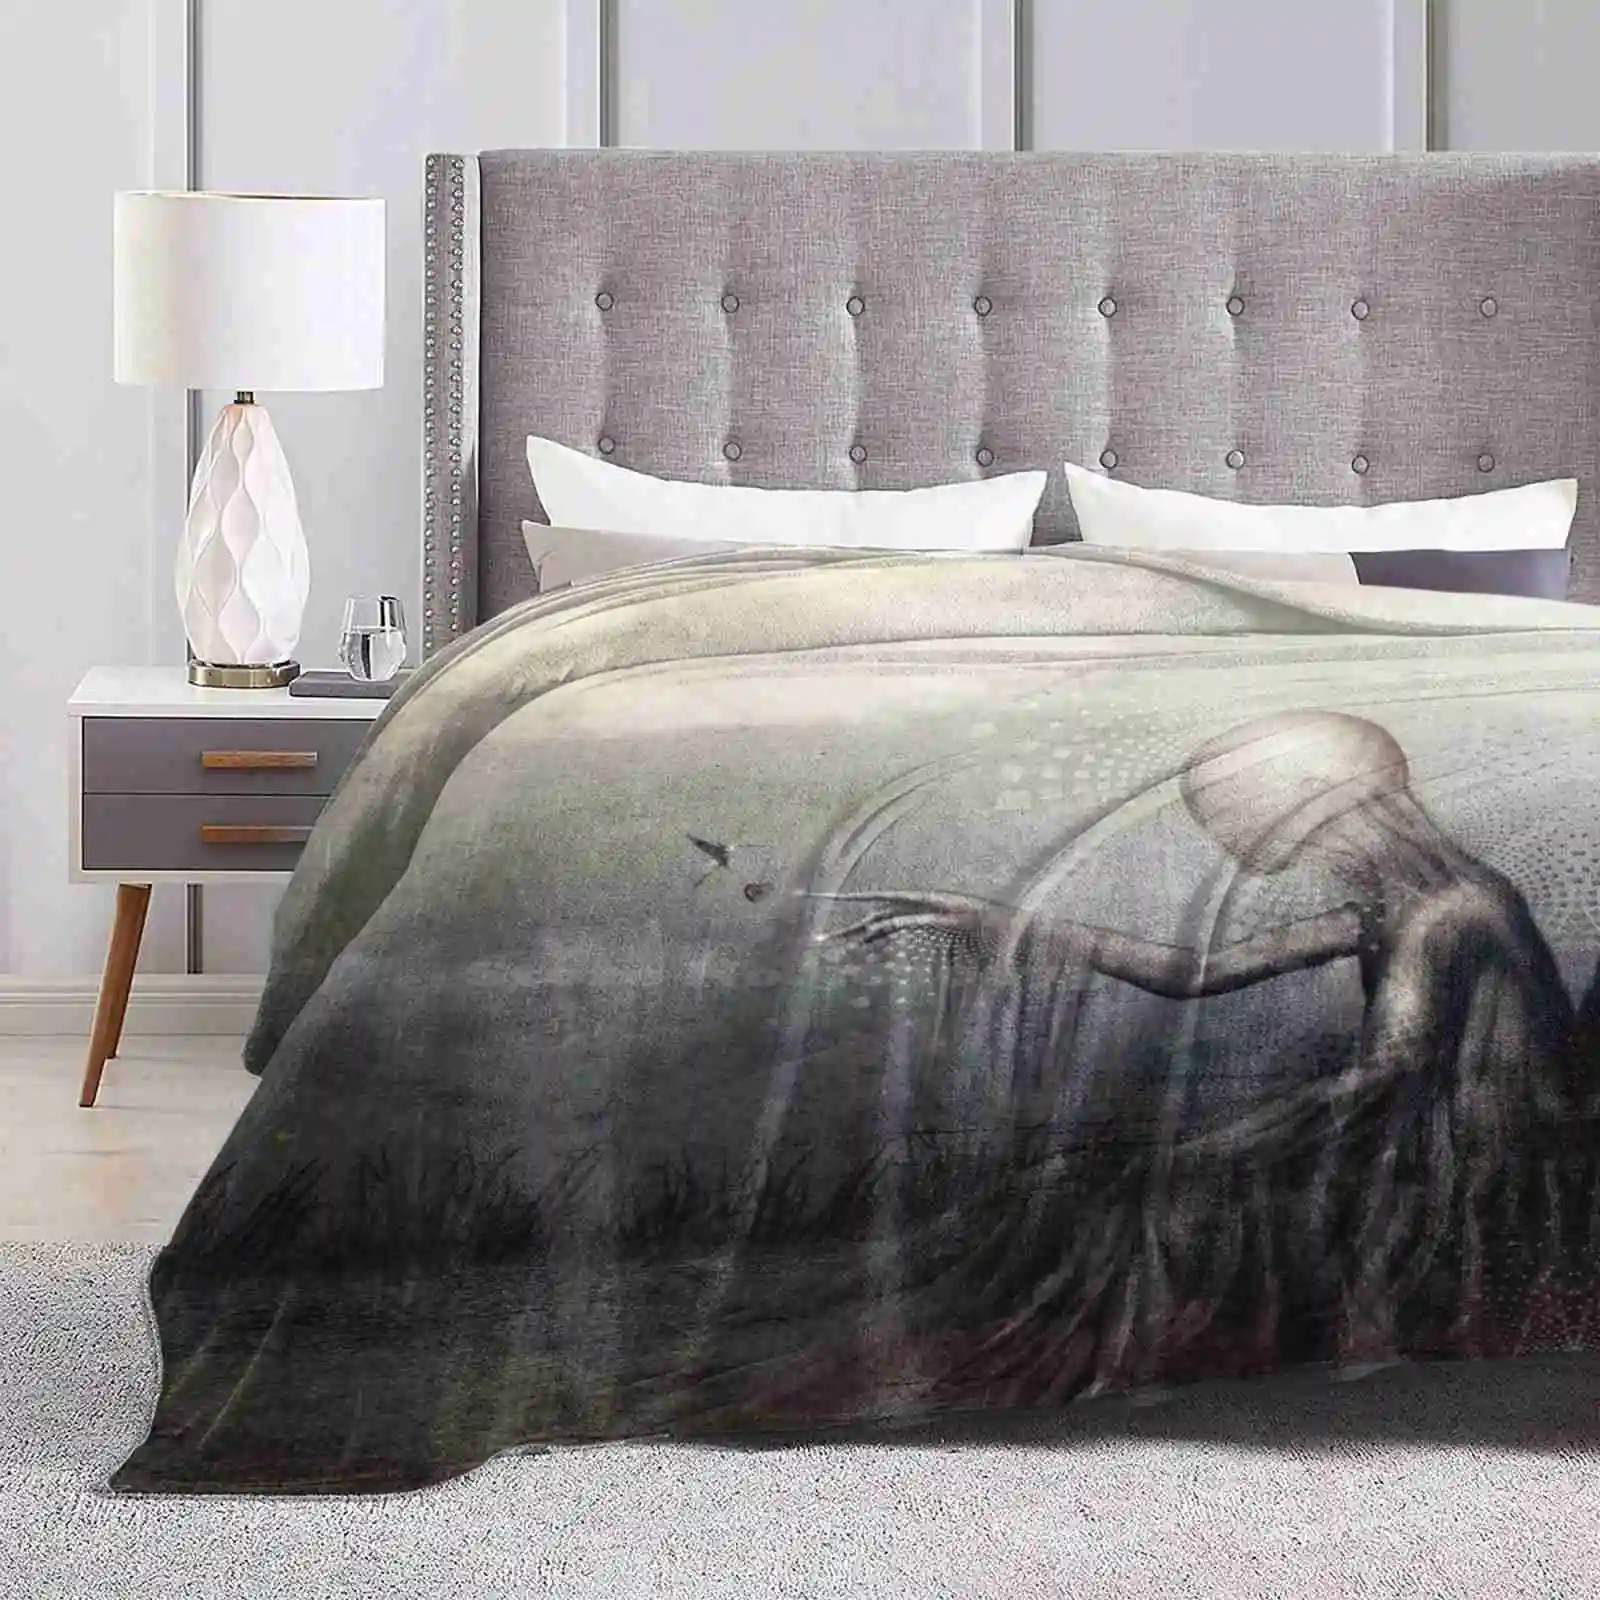 

Удобное мягкое одеяло для кровати Dreams Fly, высокое качество, романтическое дерево, Тасмания, фотошоп, мечты, фигурка, 3D сон, фотоманипуляция